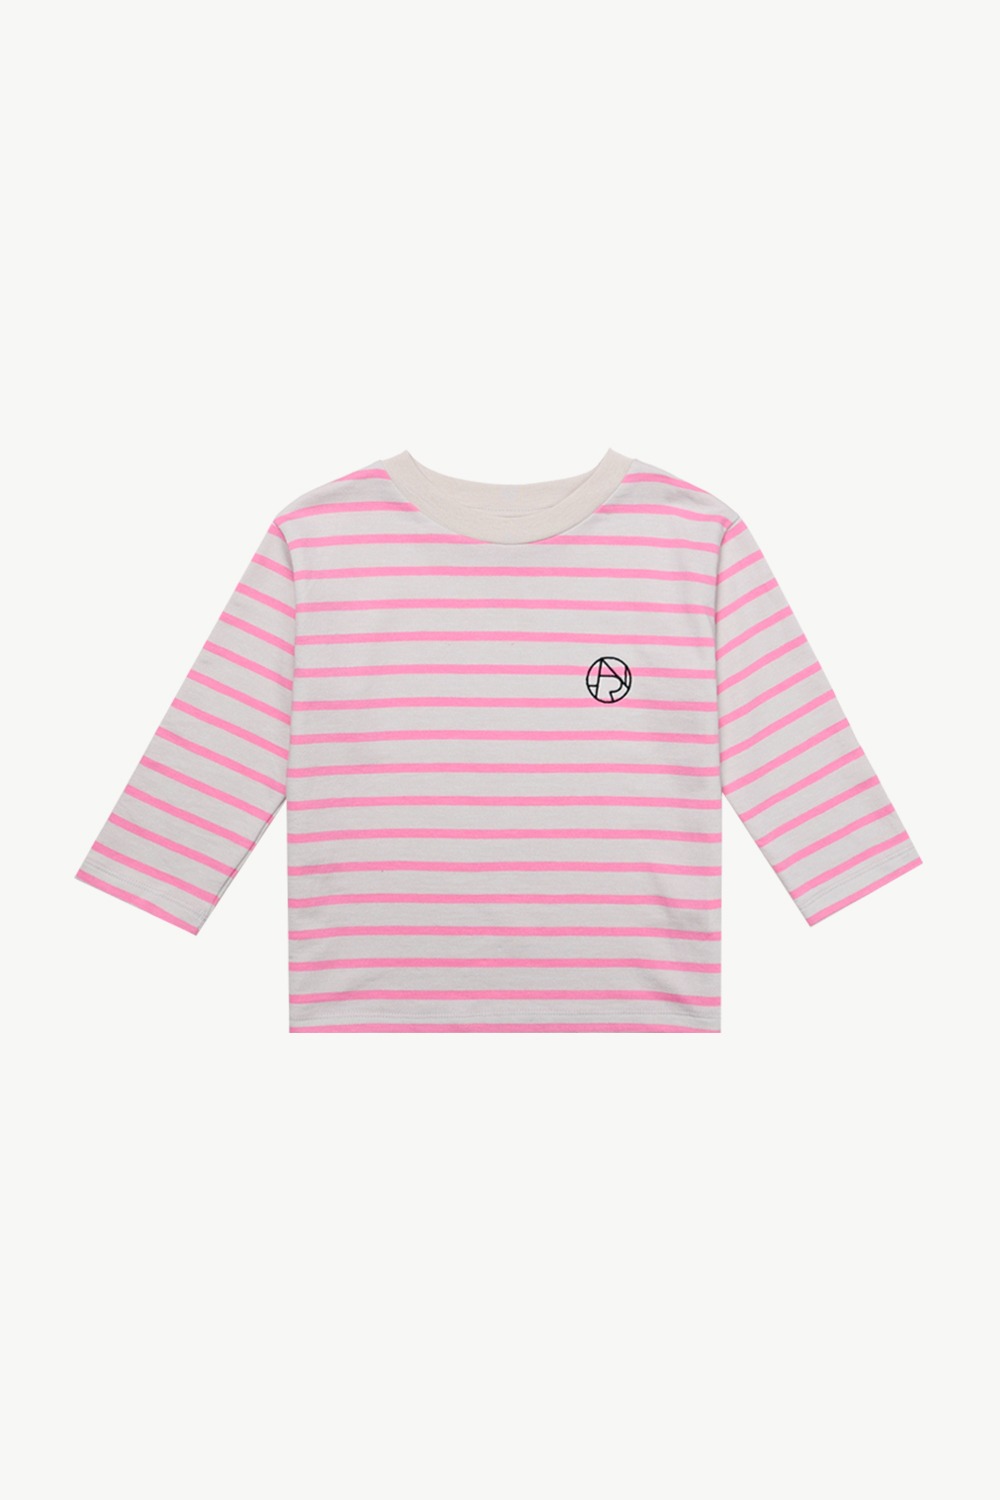 심볼 스트라이프 티셔츠 (핑크)